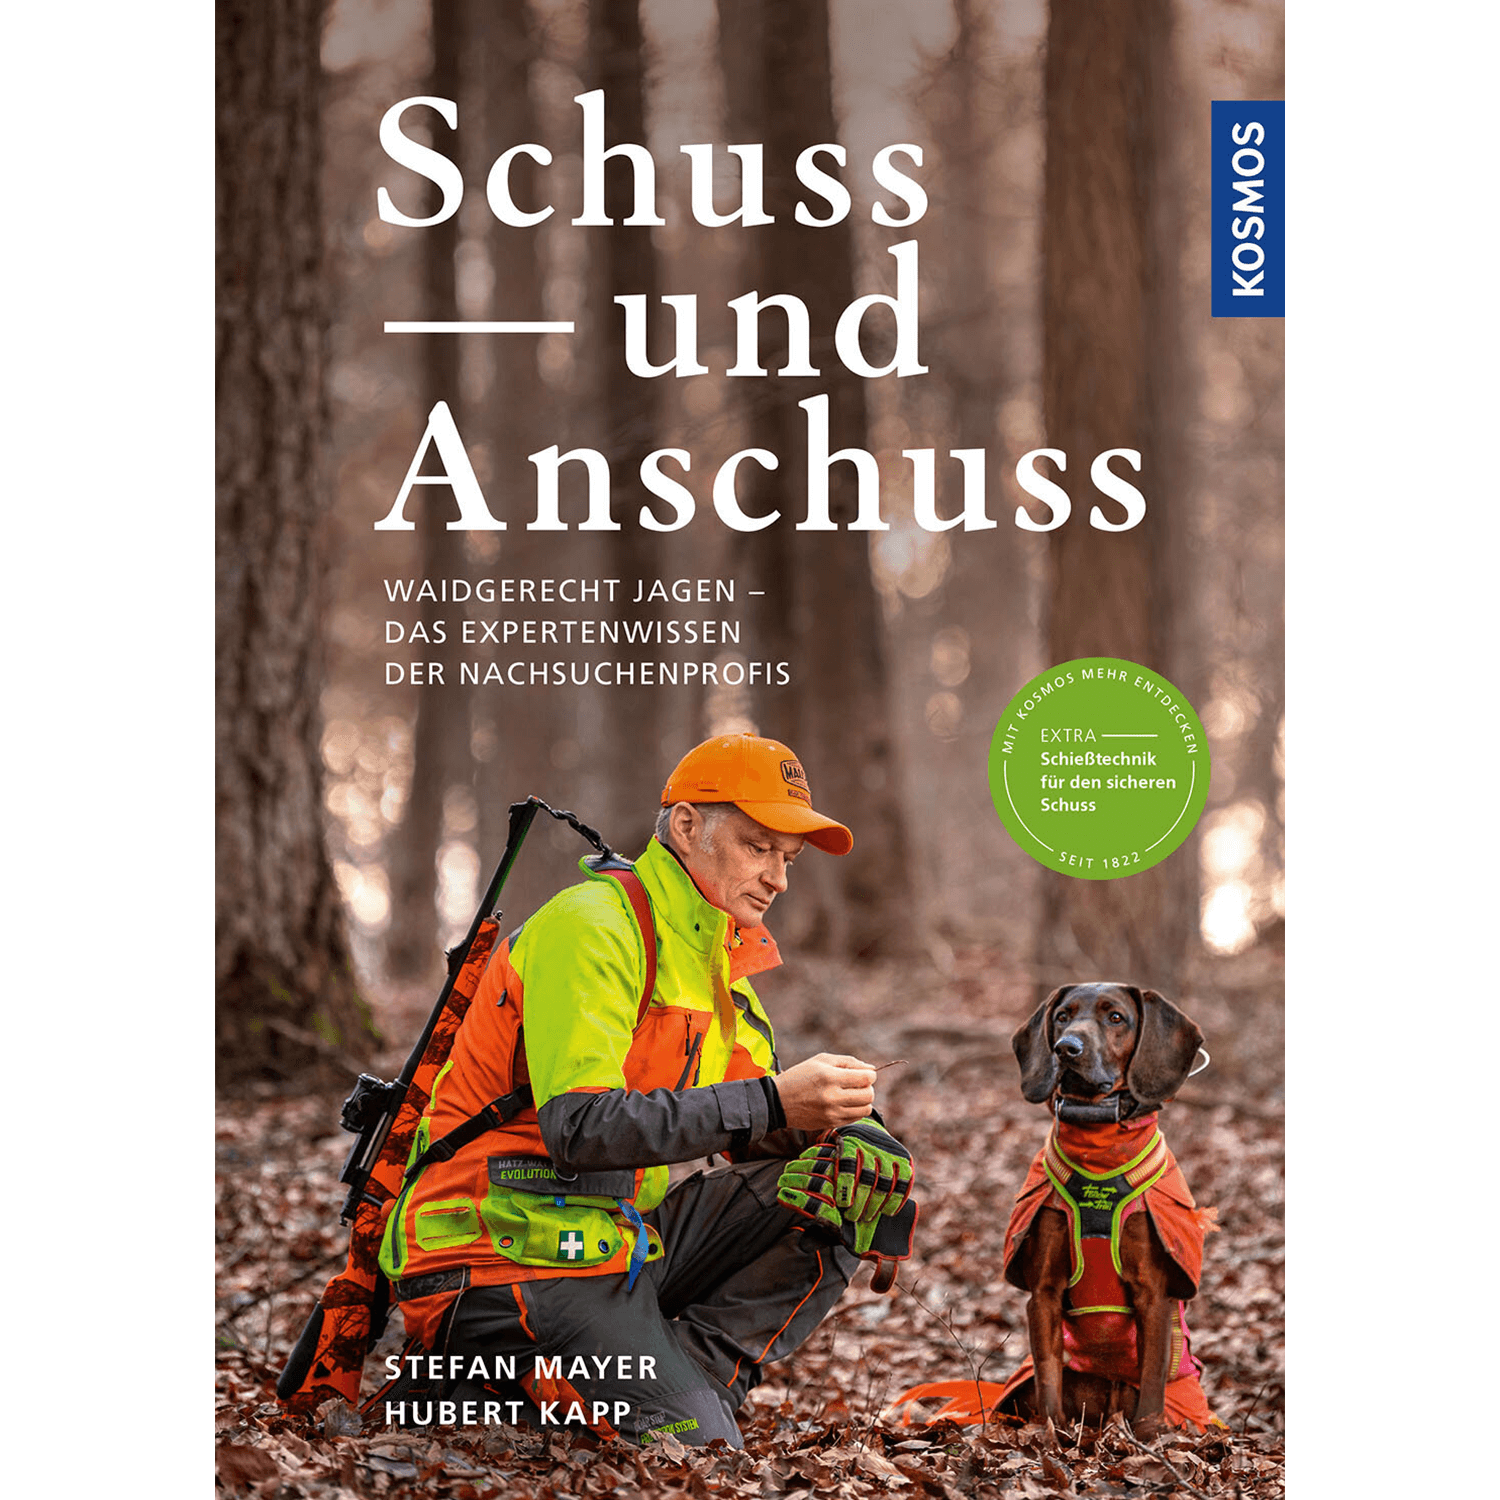 Schuss und Anschuss - Buch - Stefan Mayer & Hubert Kapp - Jagdbücher